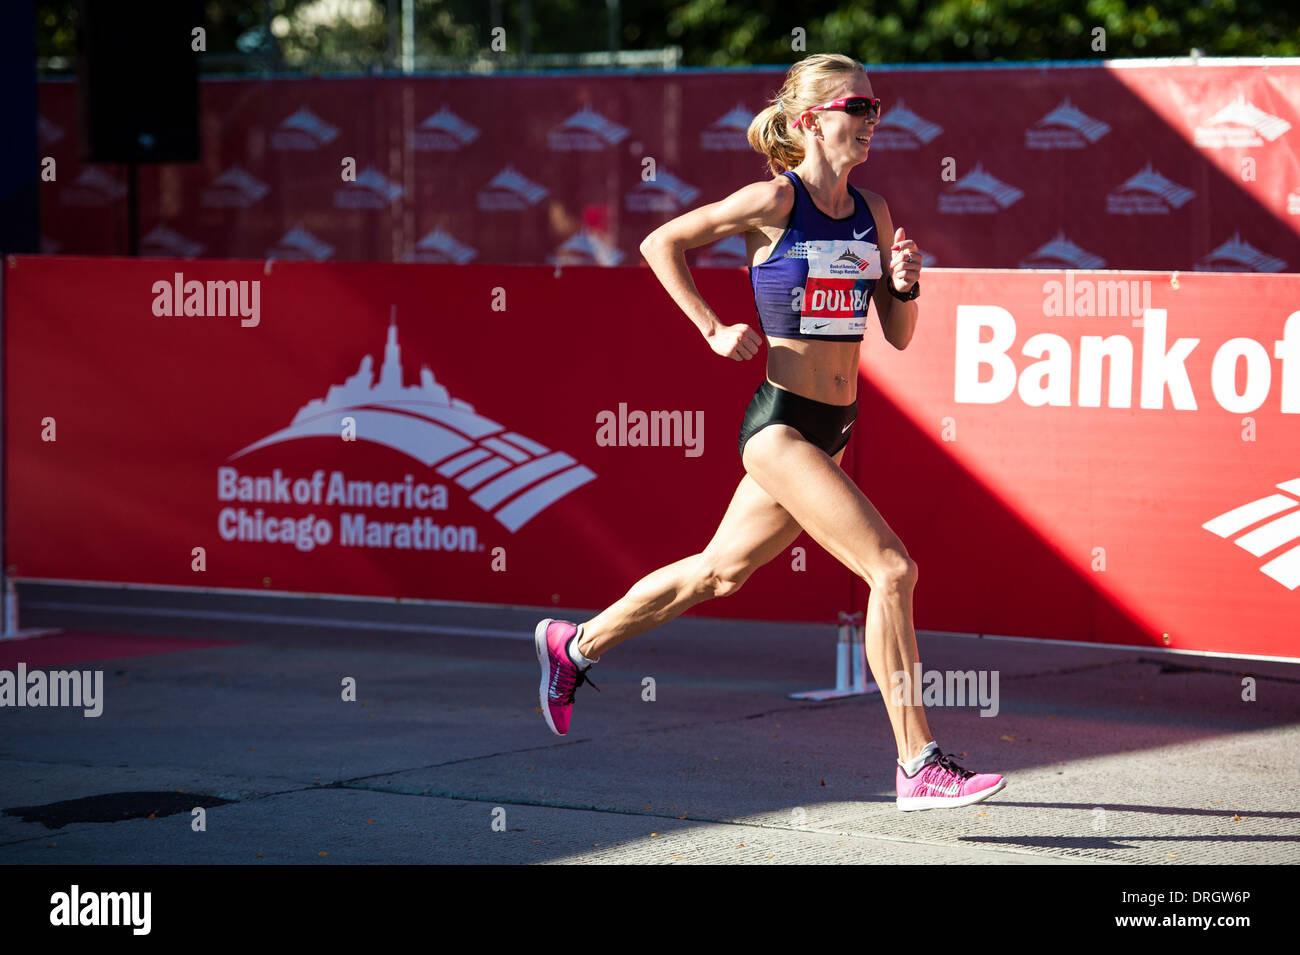 Aliaksandra Duliba der Republik Belarus überquert die Ziellinie bei der Bank of America Chicago Marathon am 13. Oktober 2013. Stockfoto